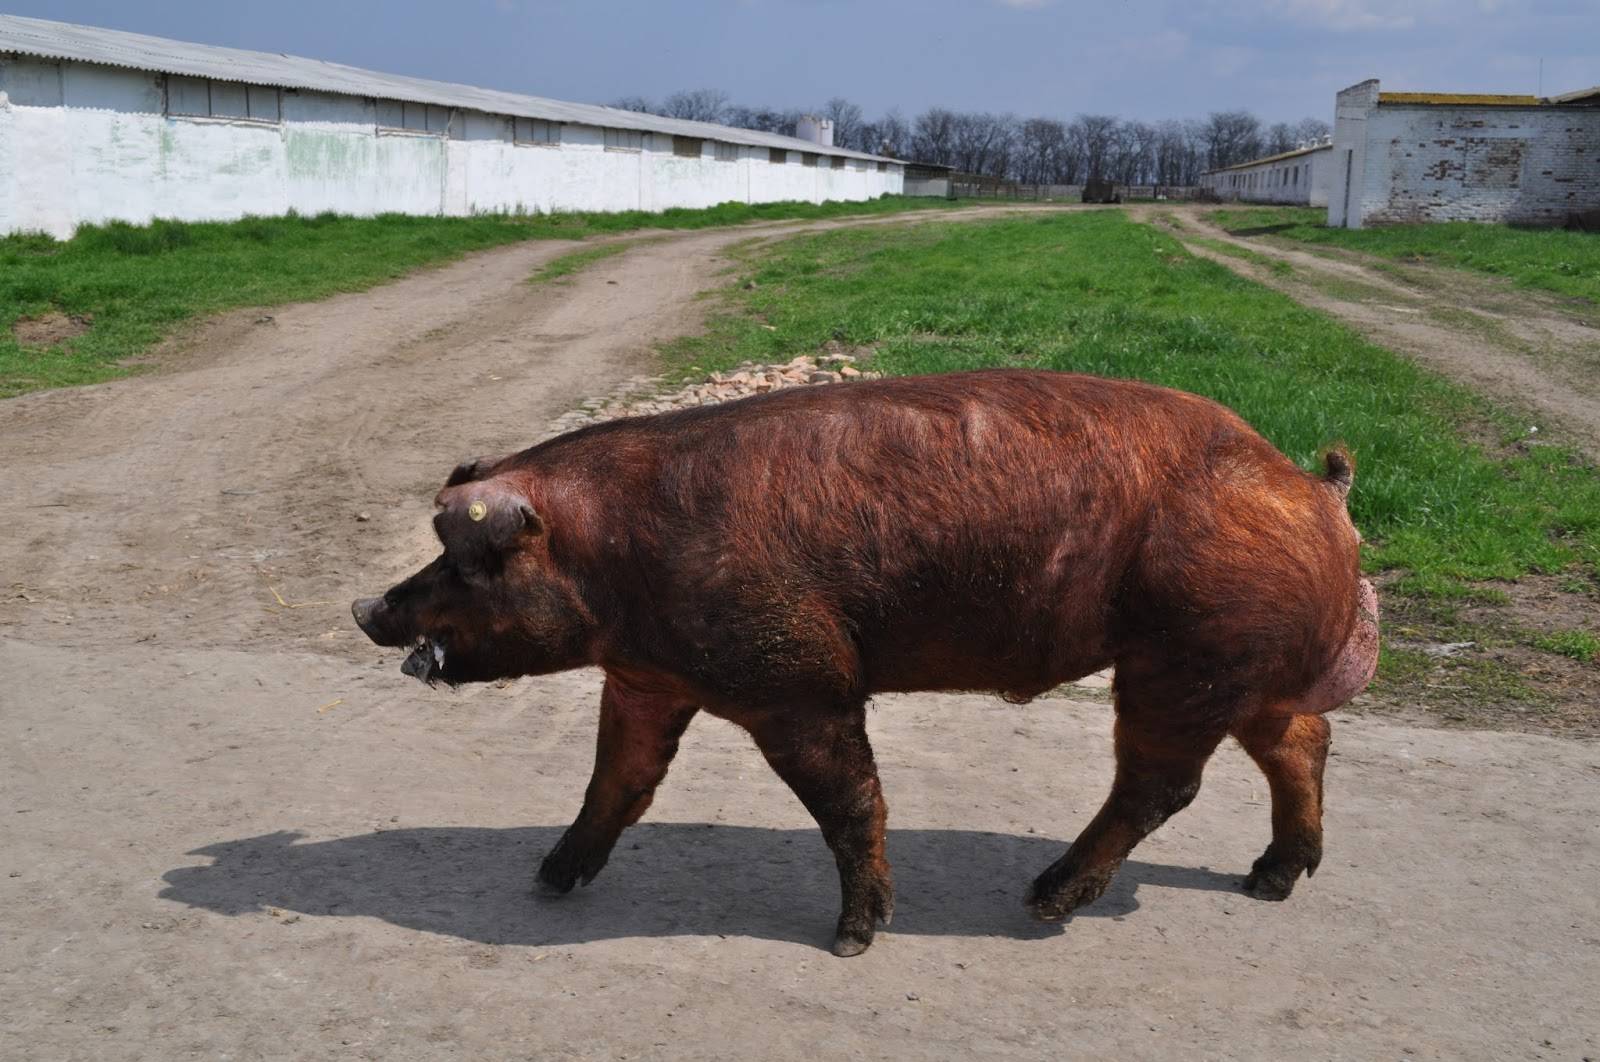 Описание и характеристика свиней породы дюрок